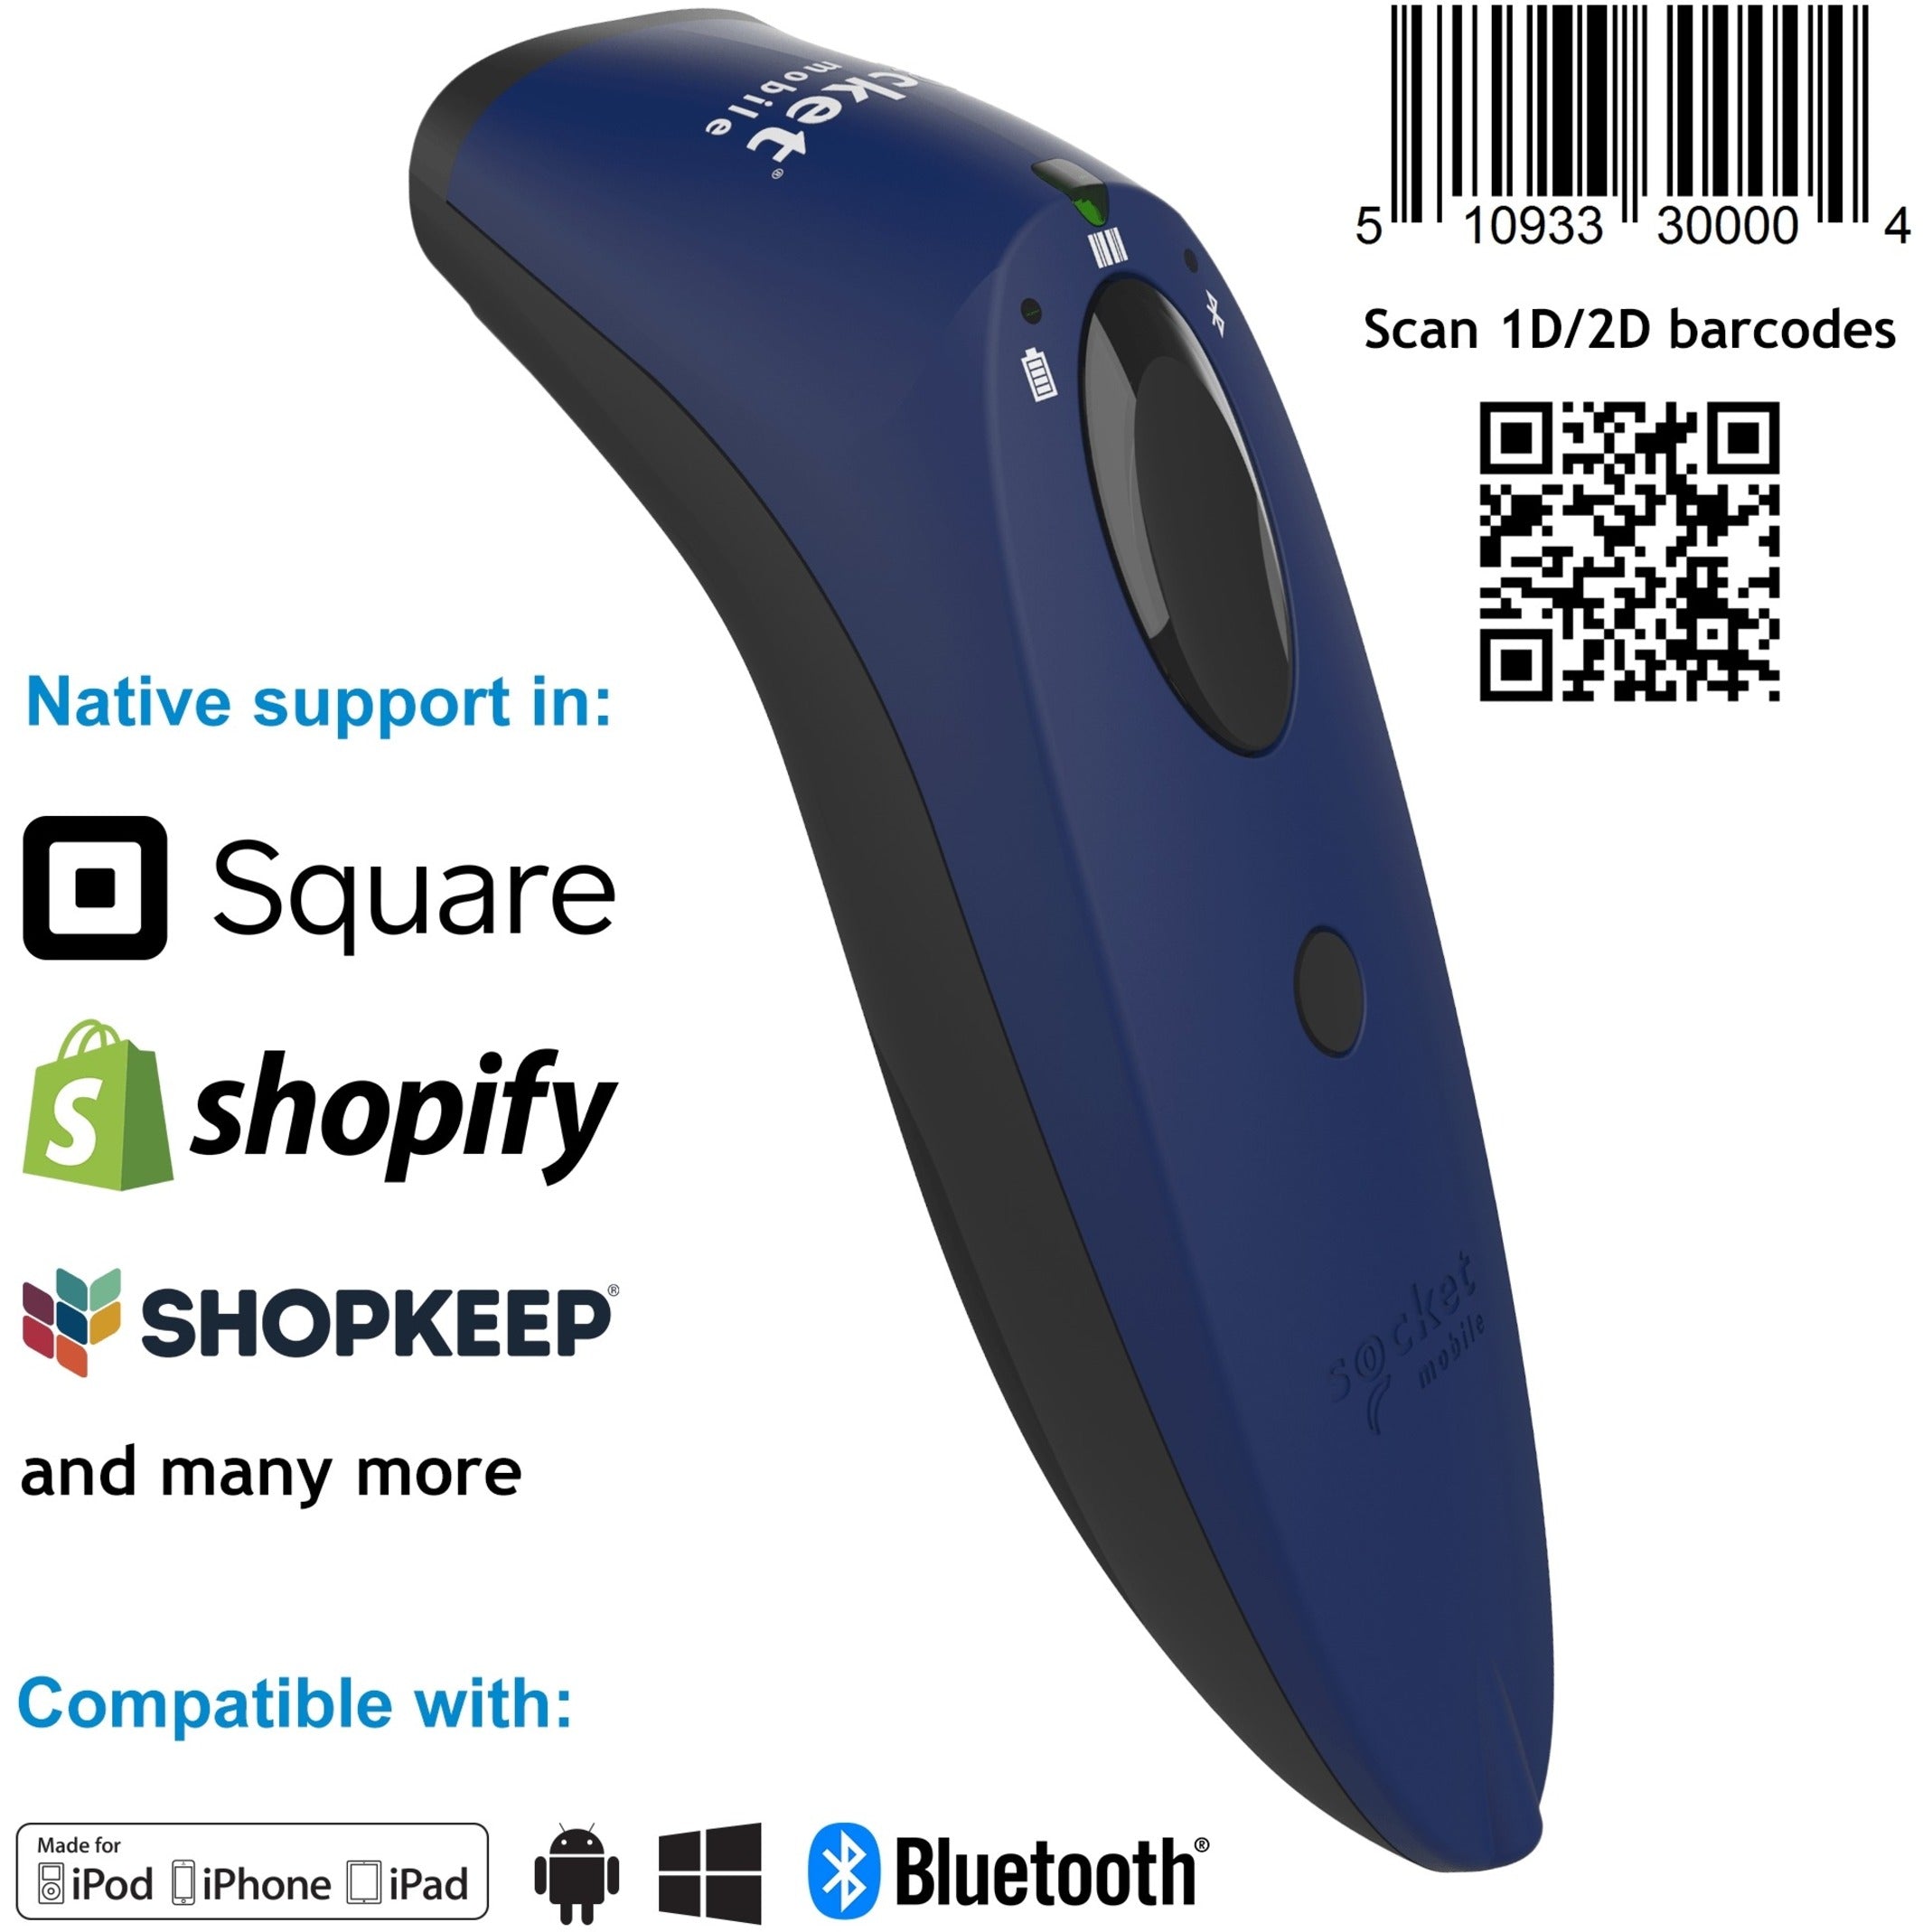 Marca: Socket Mobile Tipo: Escáner de códigos de barras universal SocketScan S740 Color: Azul